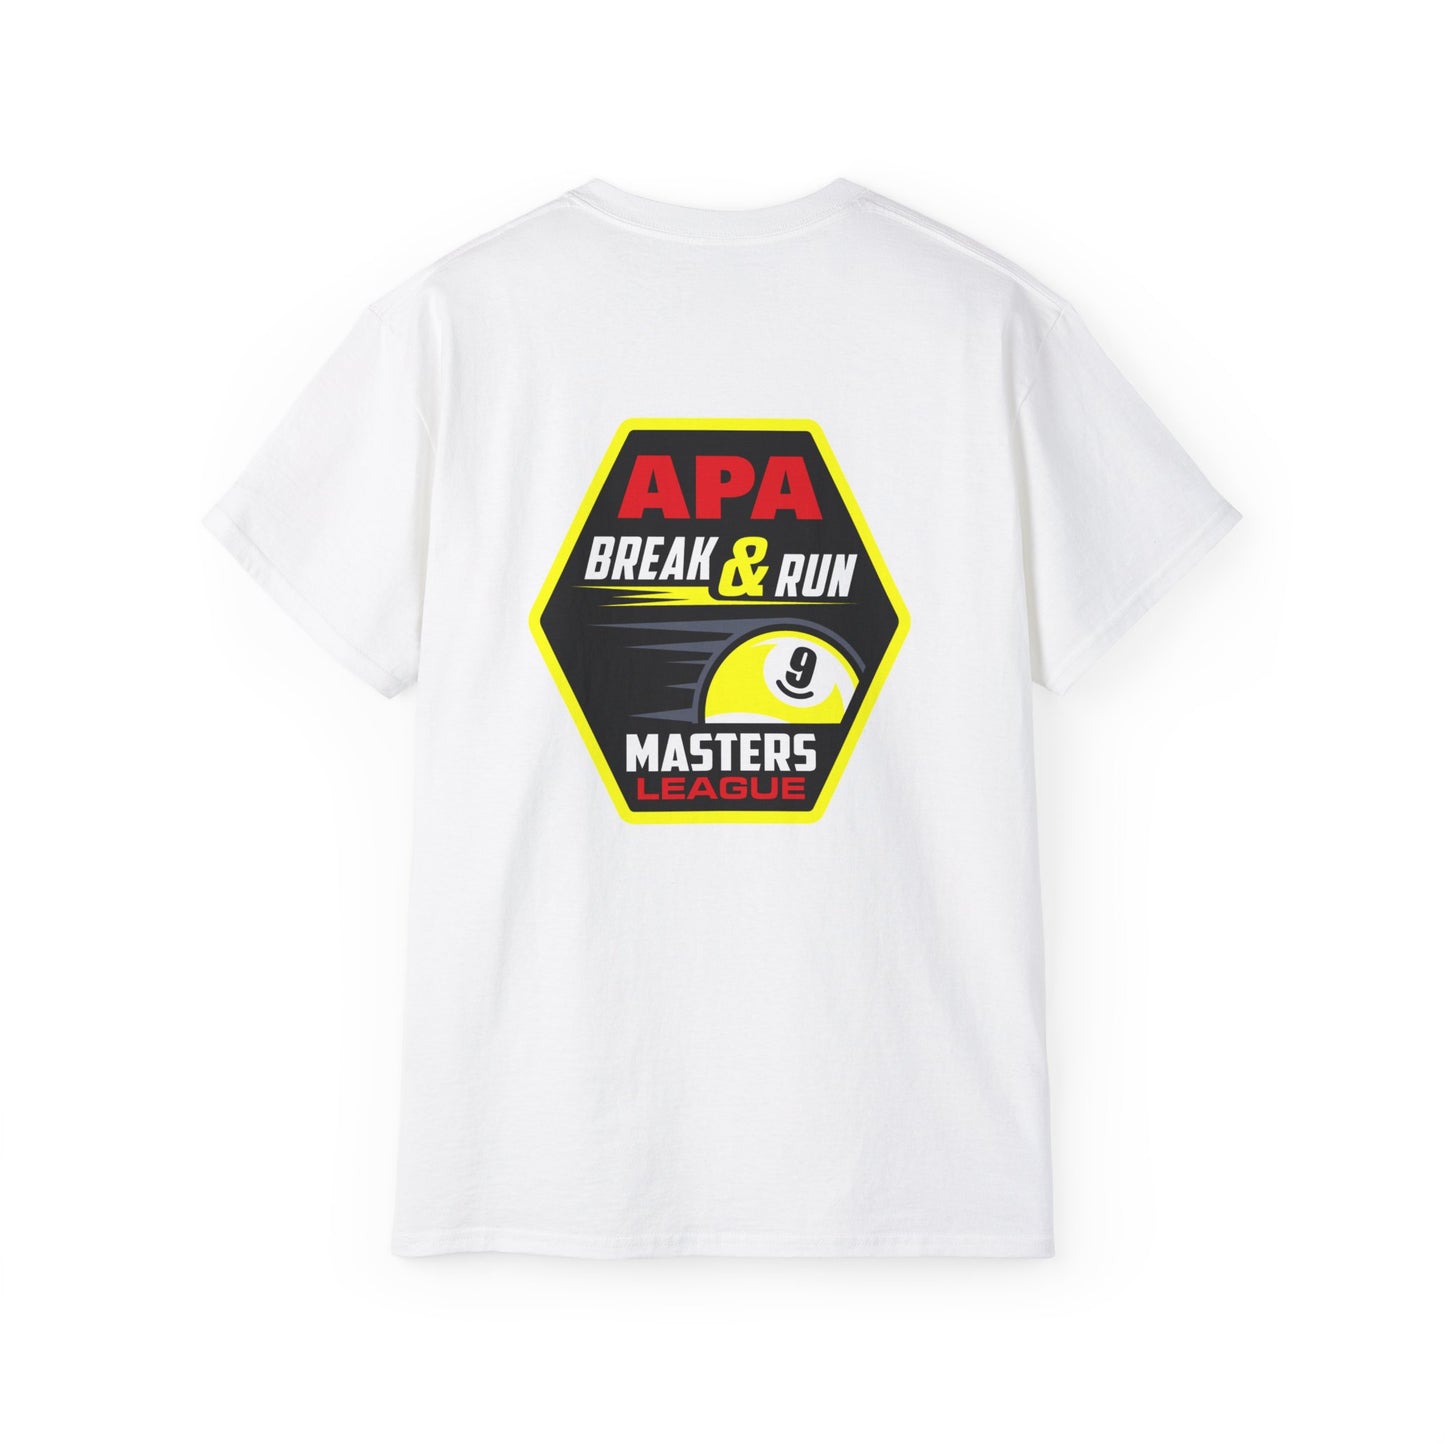 Break & Run 9-Ball Masters League T-Shirt